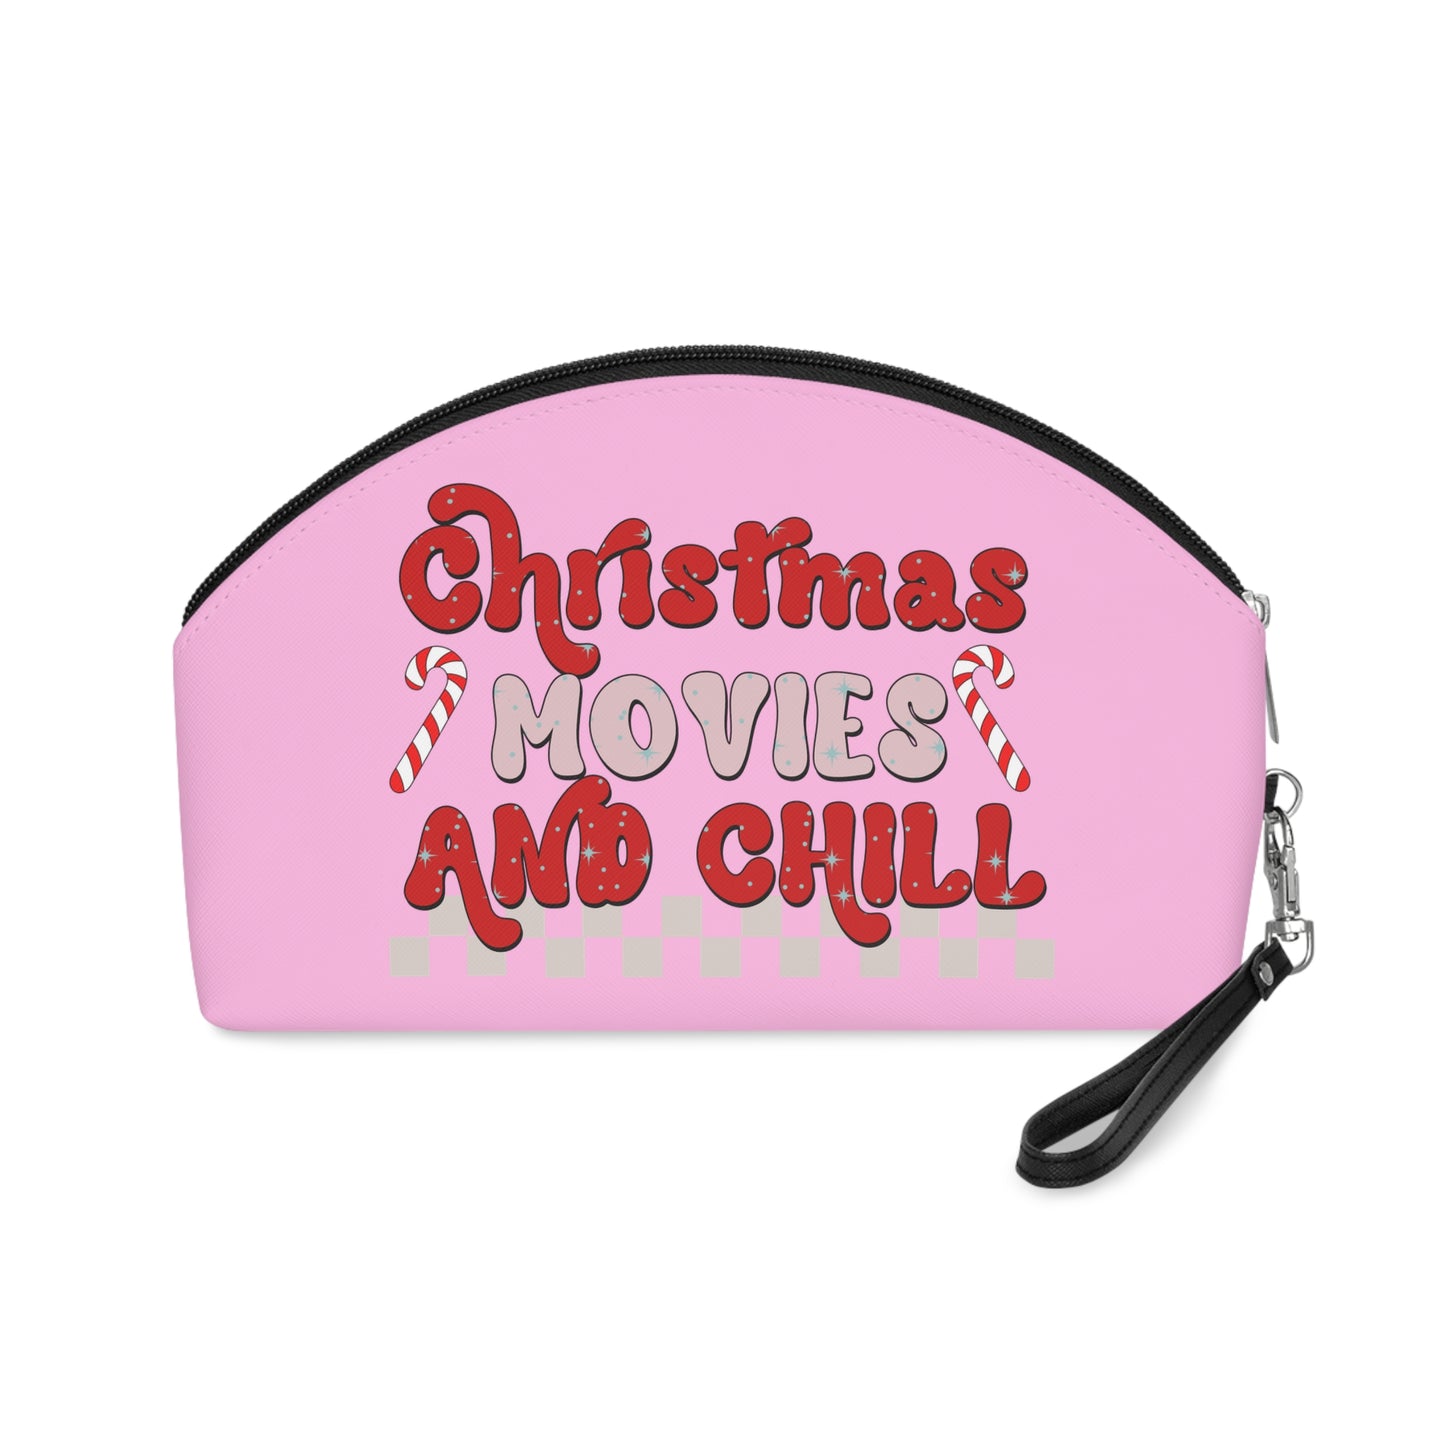 Christmas Movies And Chill Christmas Makeup Cosmetic Travel Bag